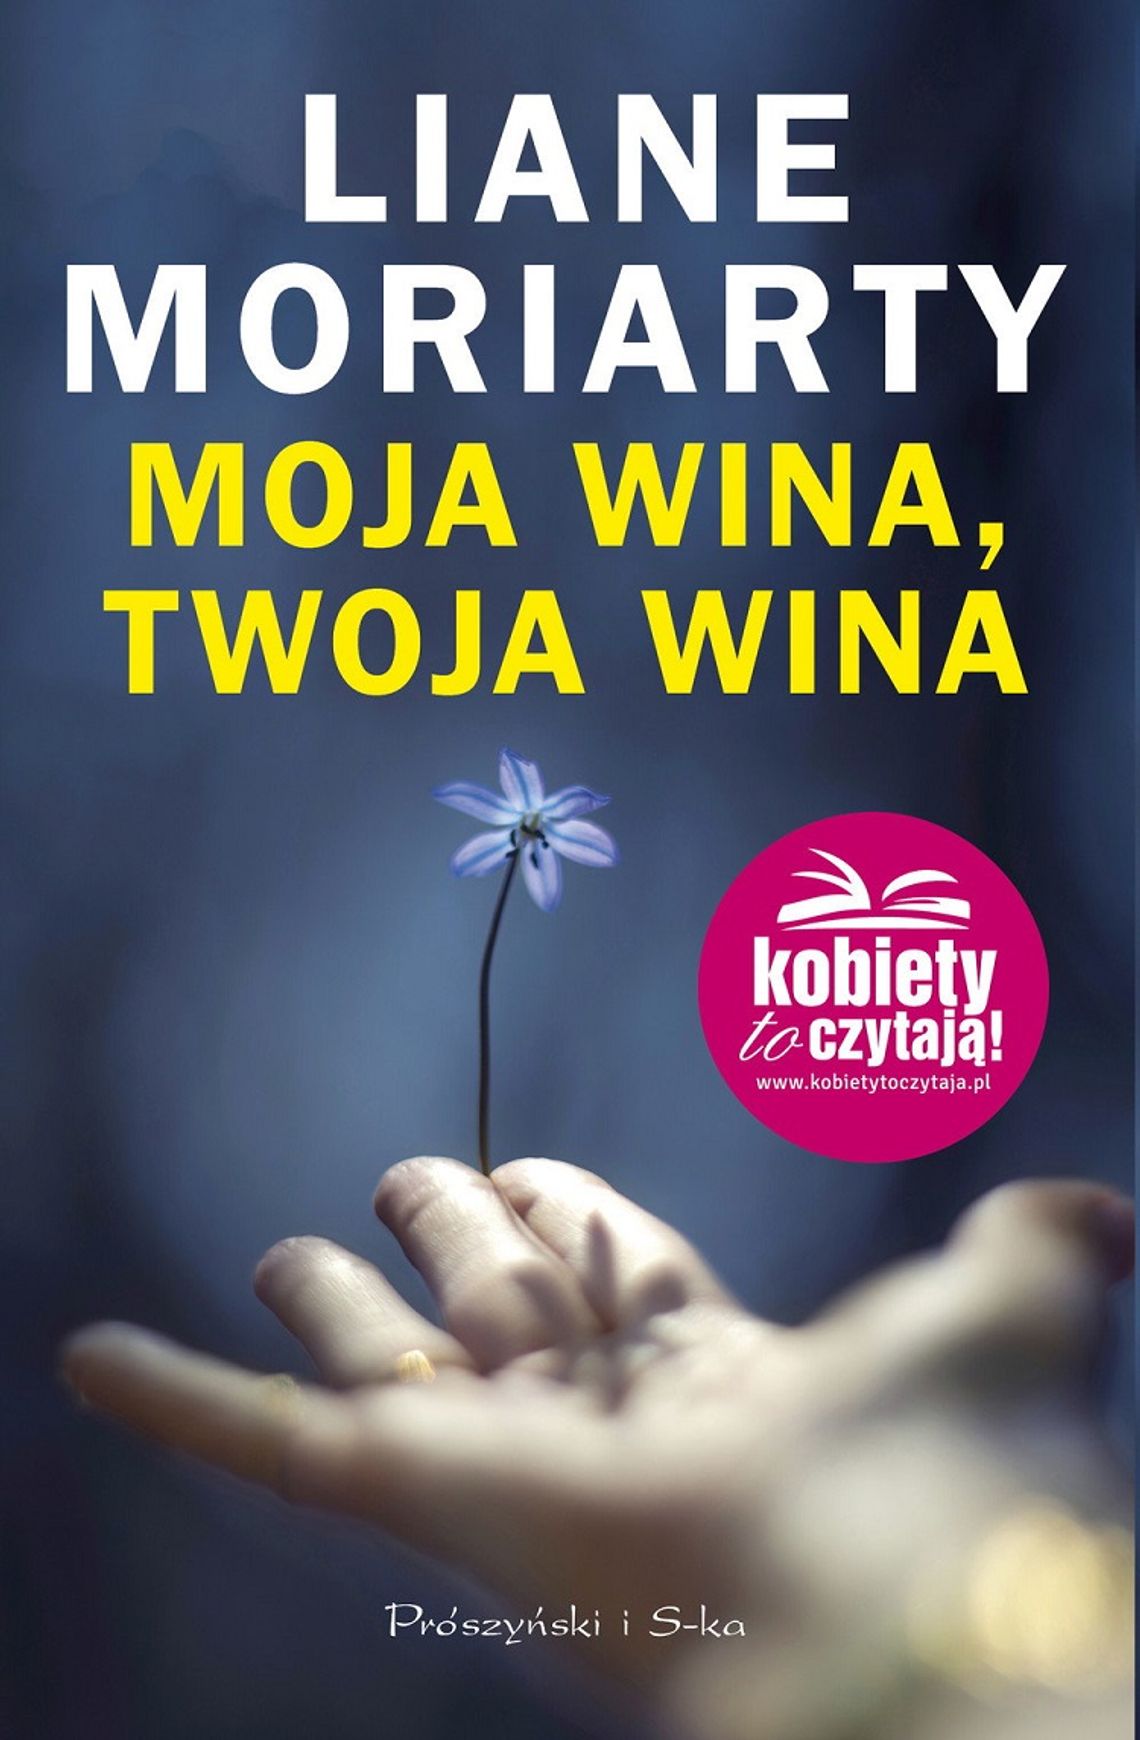 Liane Moriarty "Moja wina, twoja wina"; wyd. Prószyński i S-ka